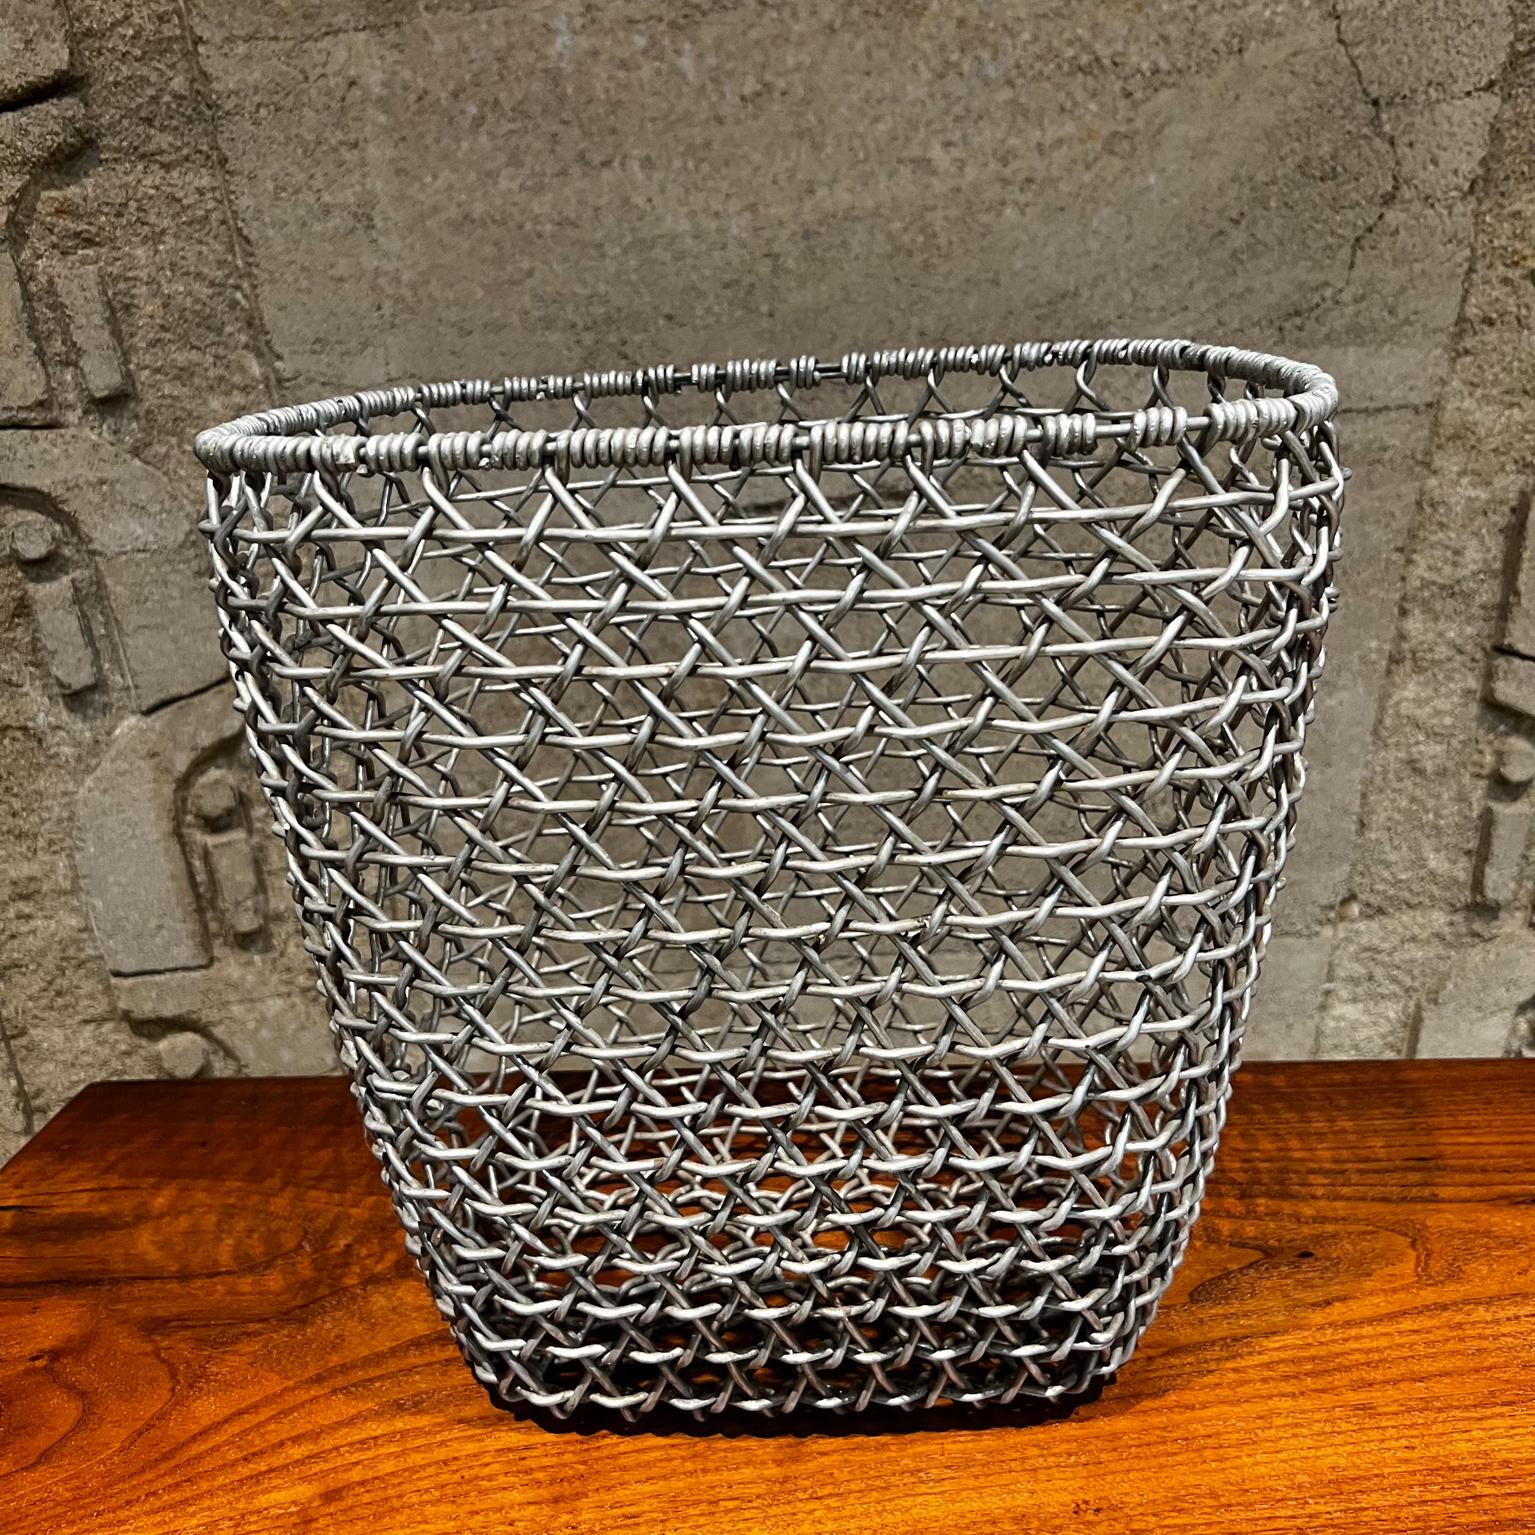 1970 Wire Basket Woven Aluminum Modern Waste Basket Container
Vintage By
Non marqué
Etat d'origine vintage, d'occasion, non restauré. Présente un aspect ferme et robuste.
Mesures : 12.75 H x 13.25 W x 10.25 D pouces
Reportez-vous aux images